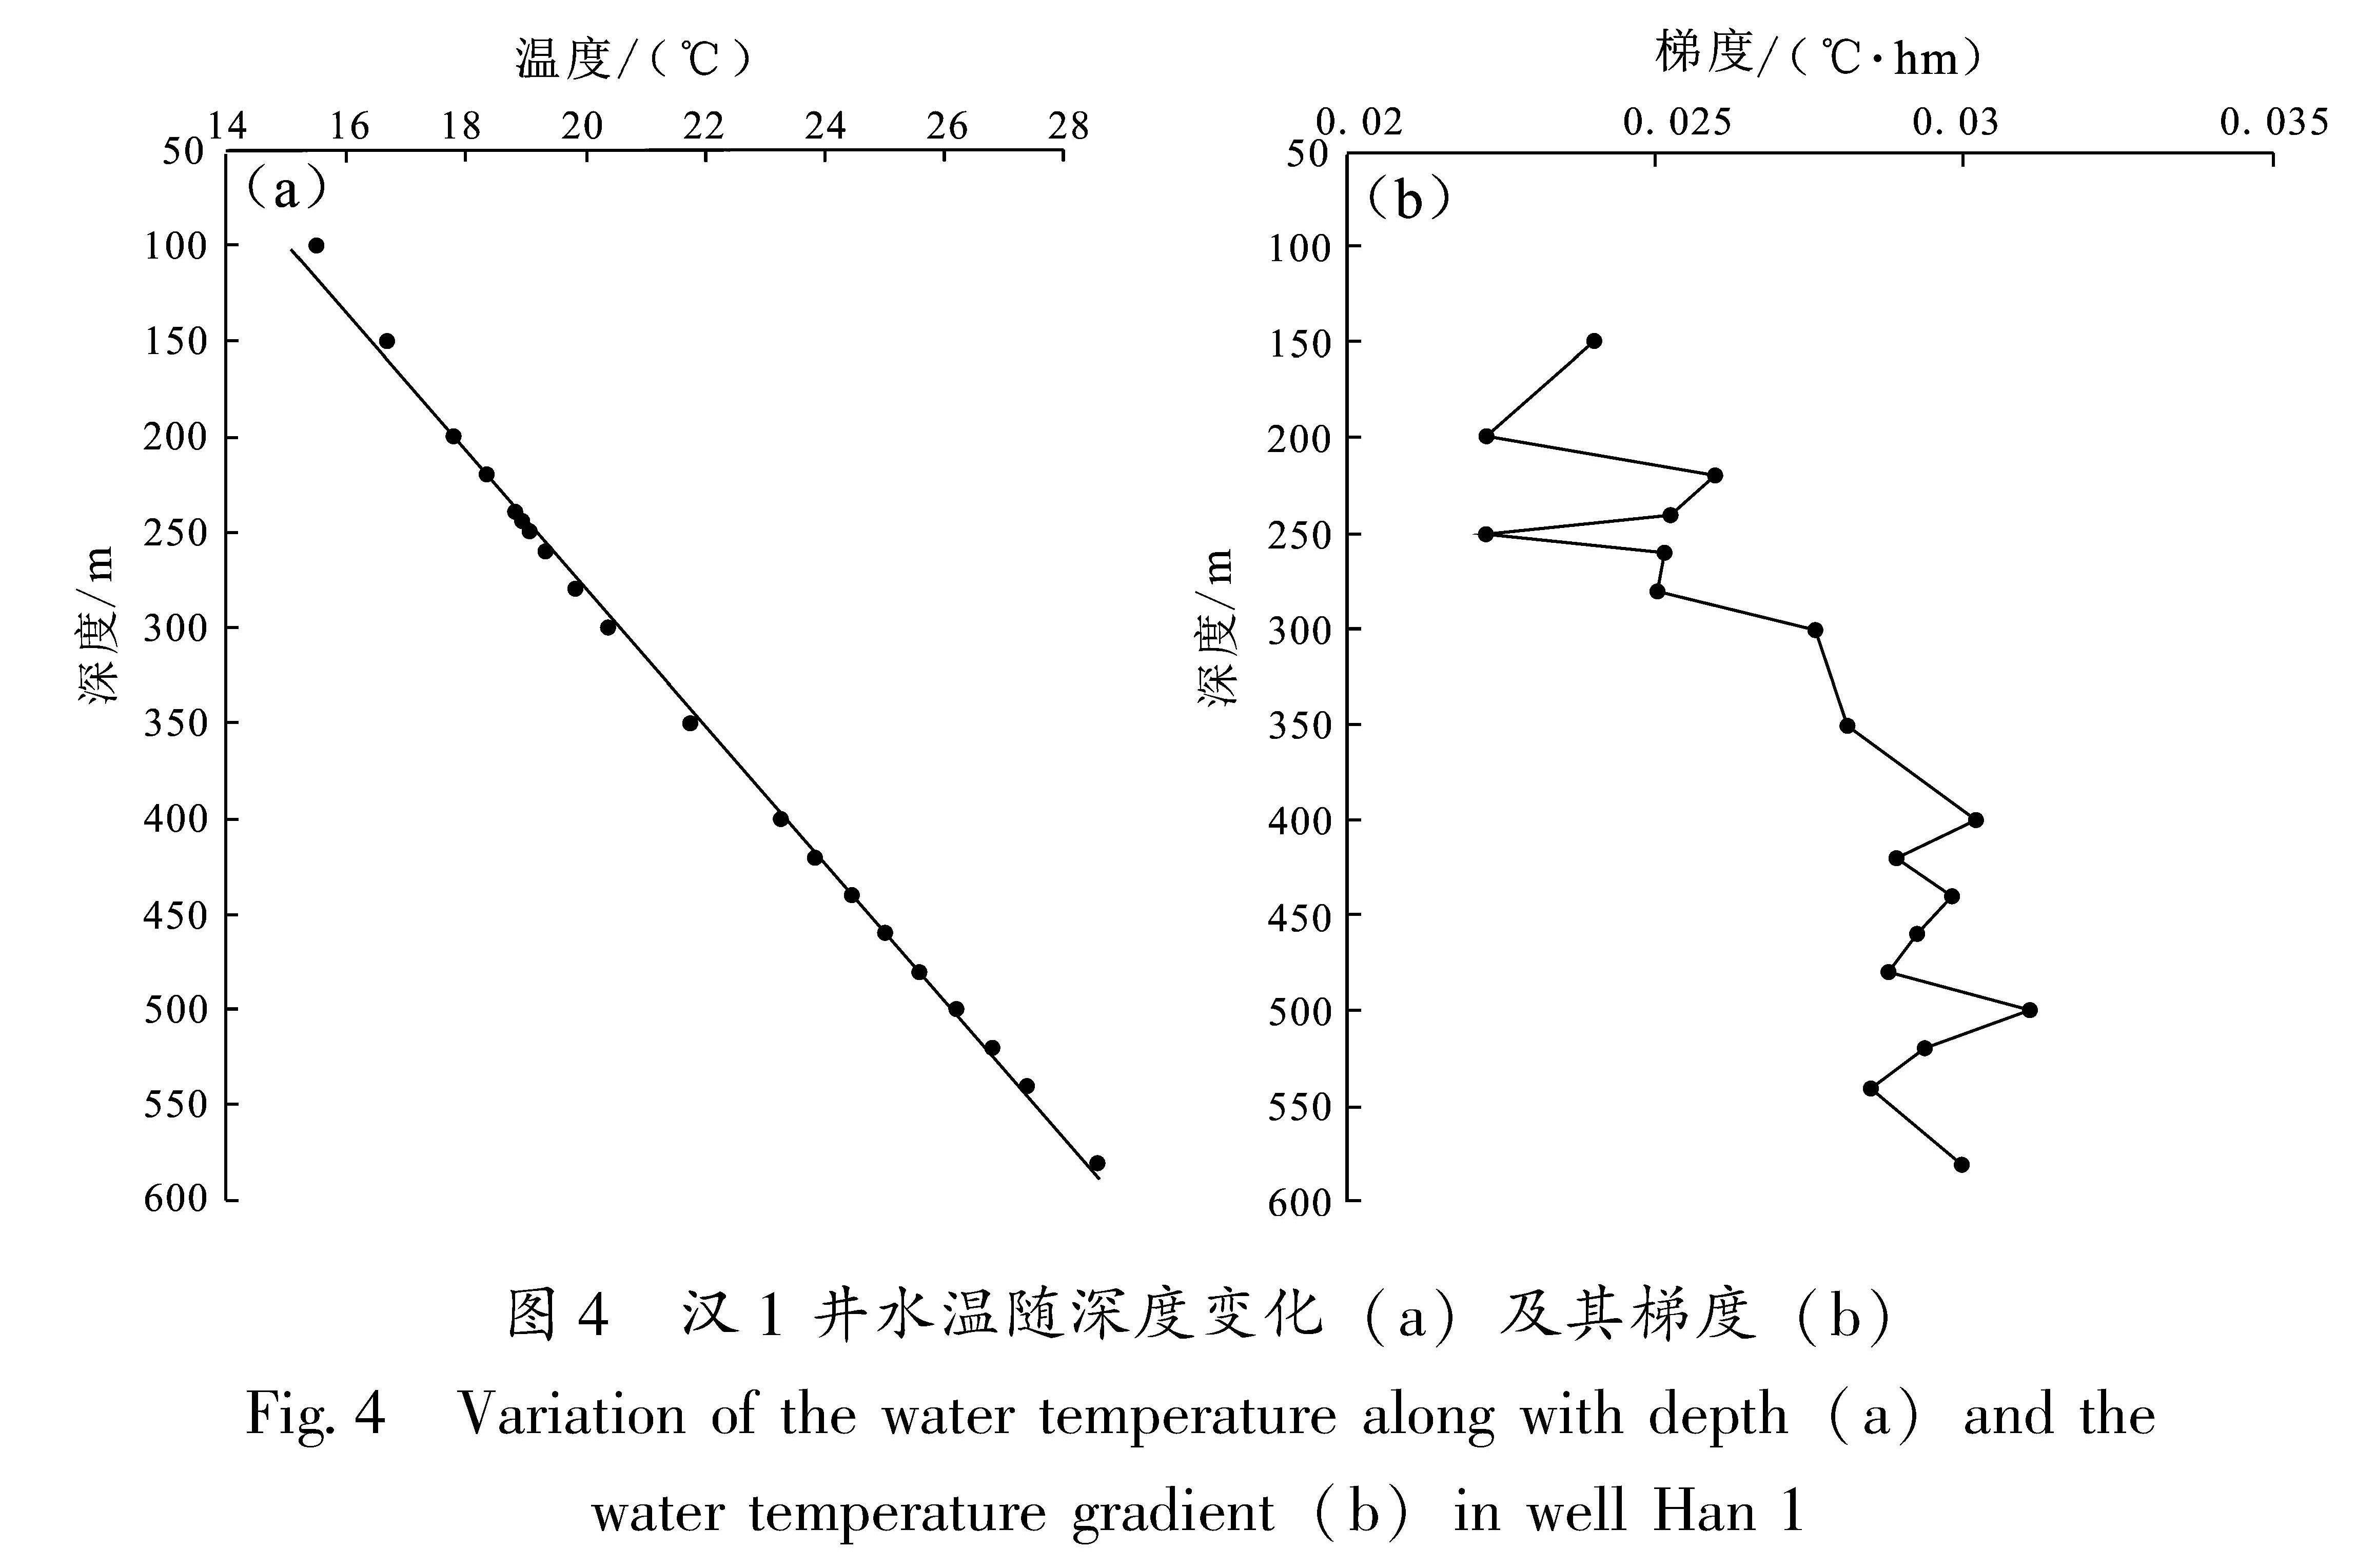 图4 汉1井水温随深度变化(a)及其梯度(b)<br/>Fig.4 Variation of the water temperature along with depth(a)and the water temperature gradient(b)in well Han 1